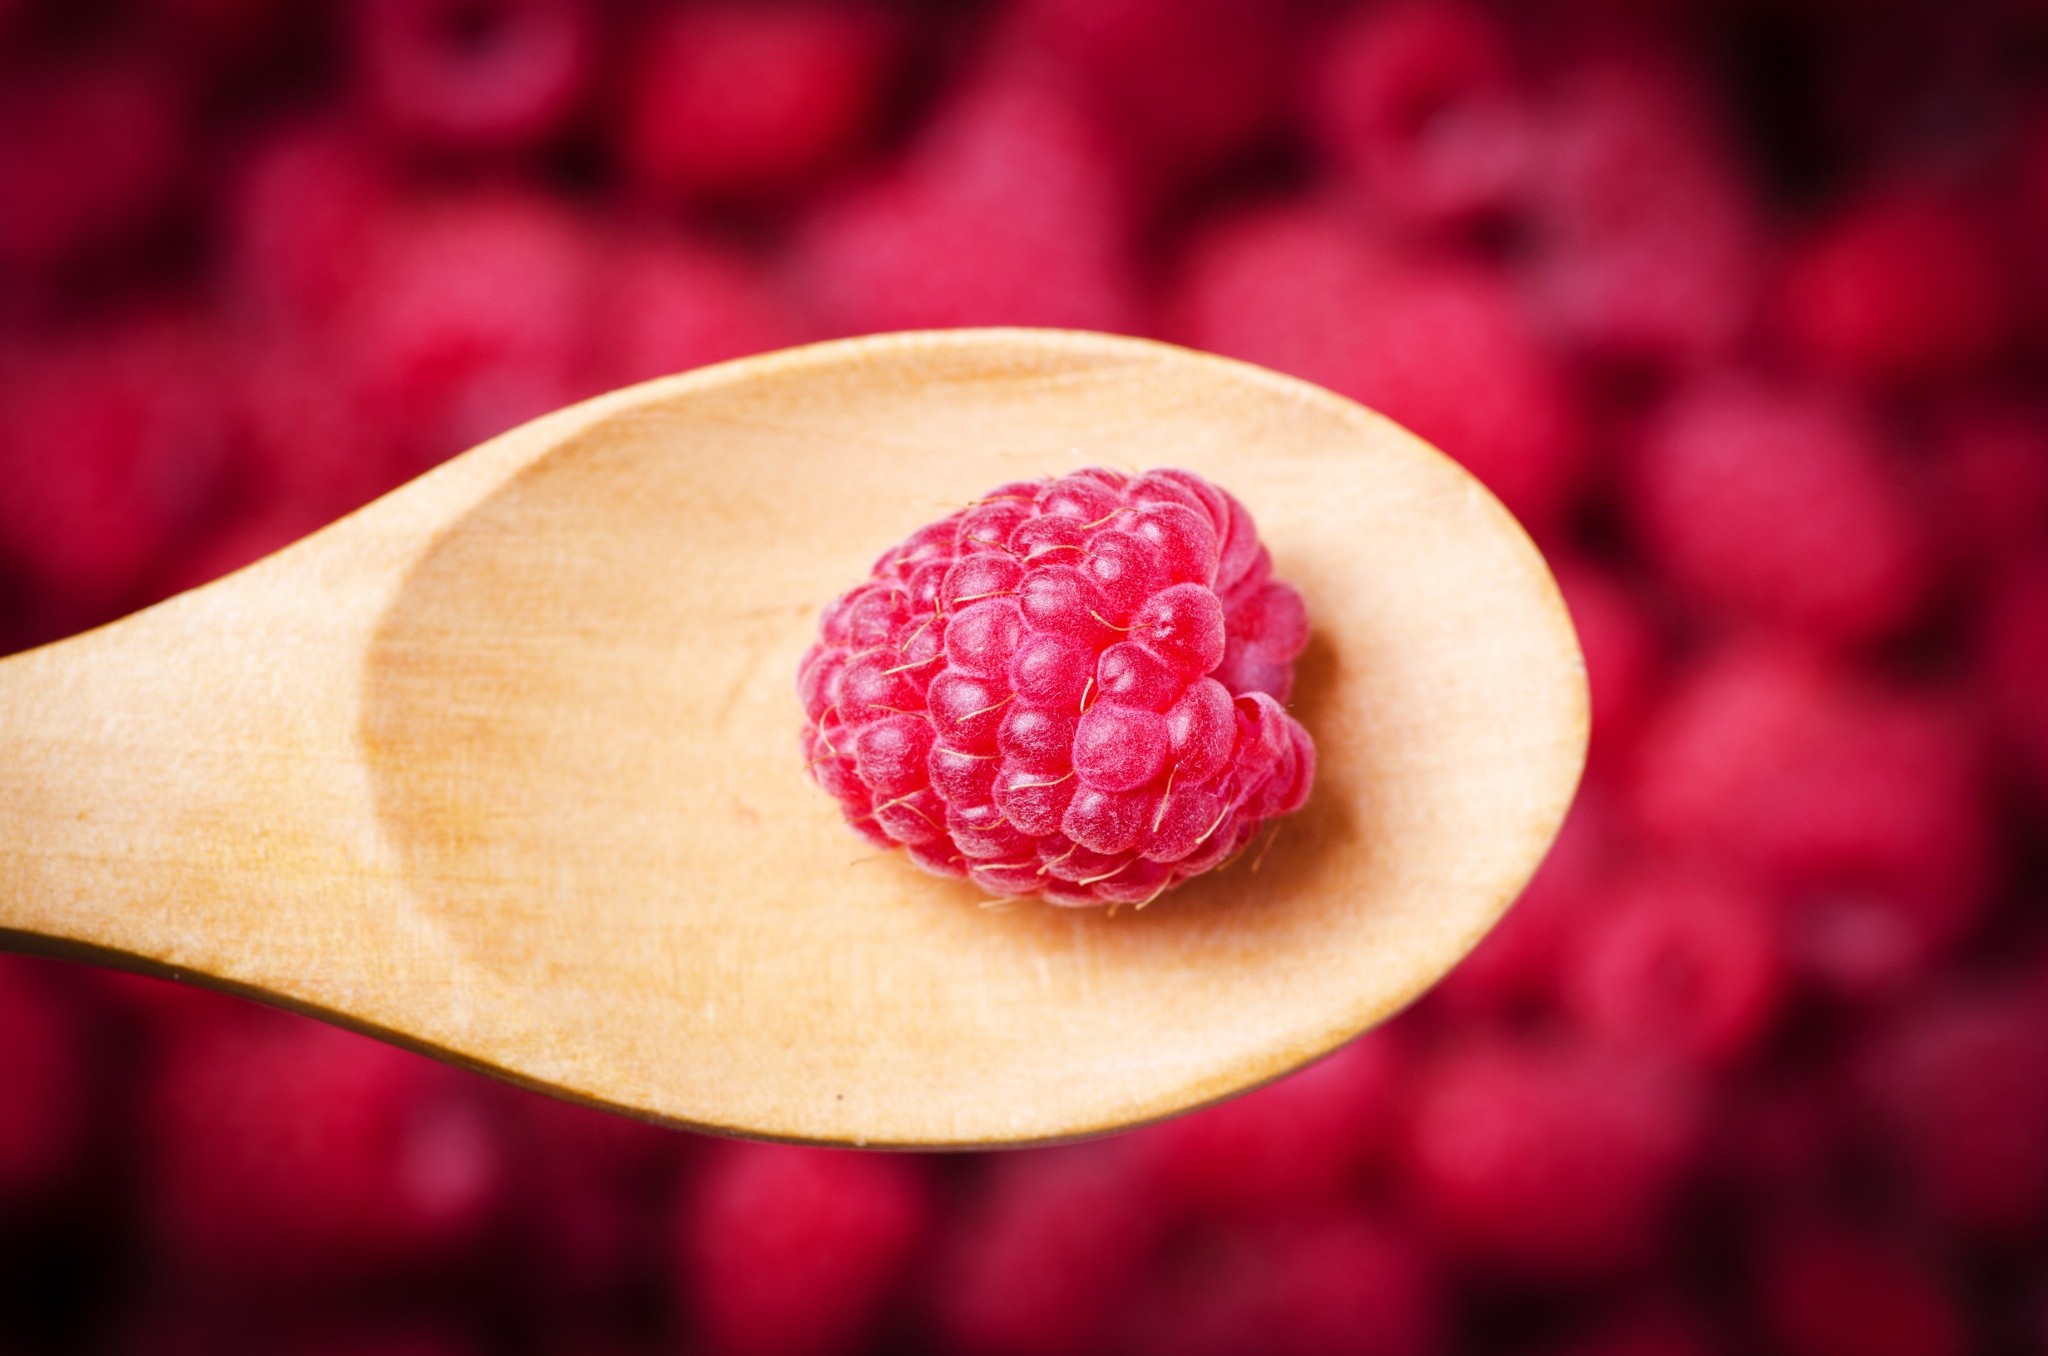 General 2048x1356 berries spoon food raspberries fruit red background